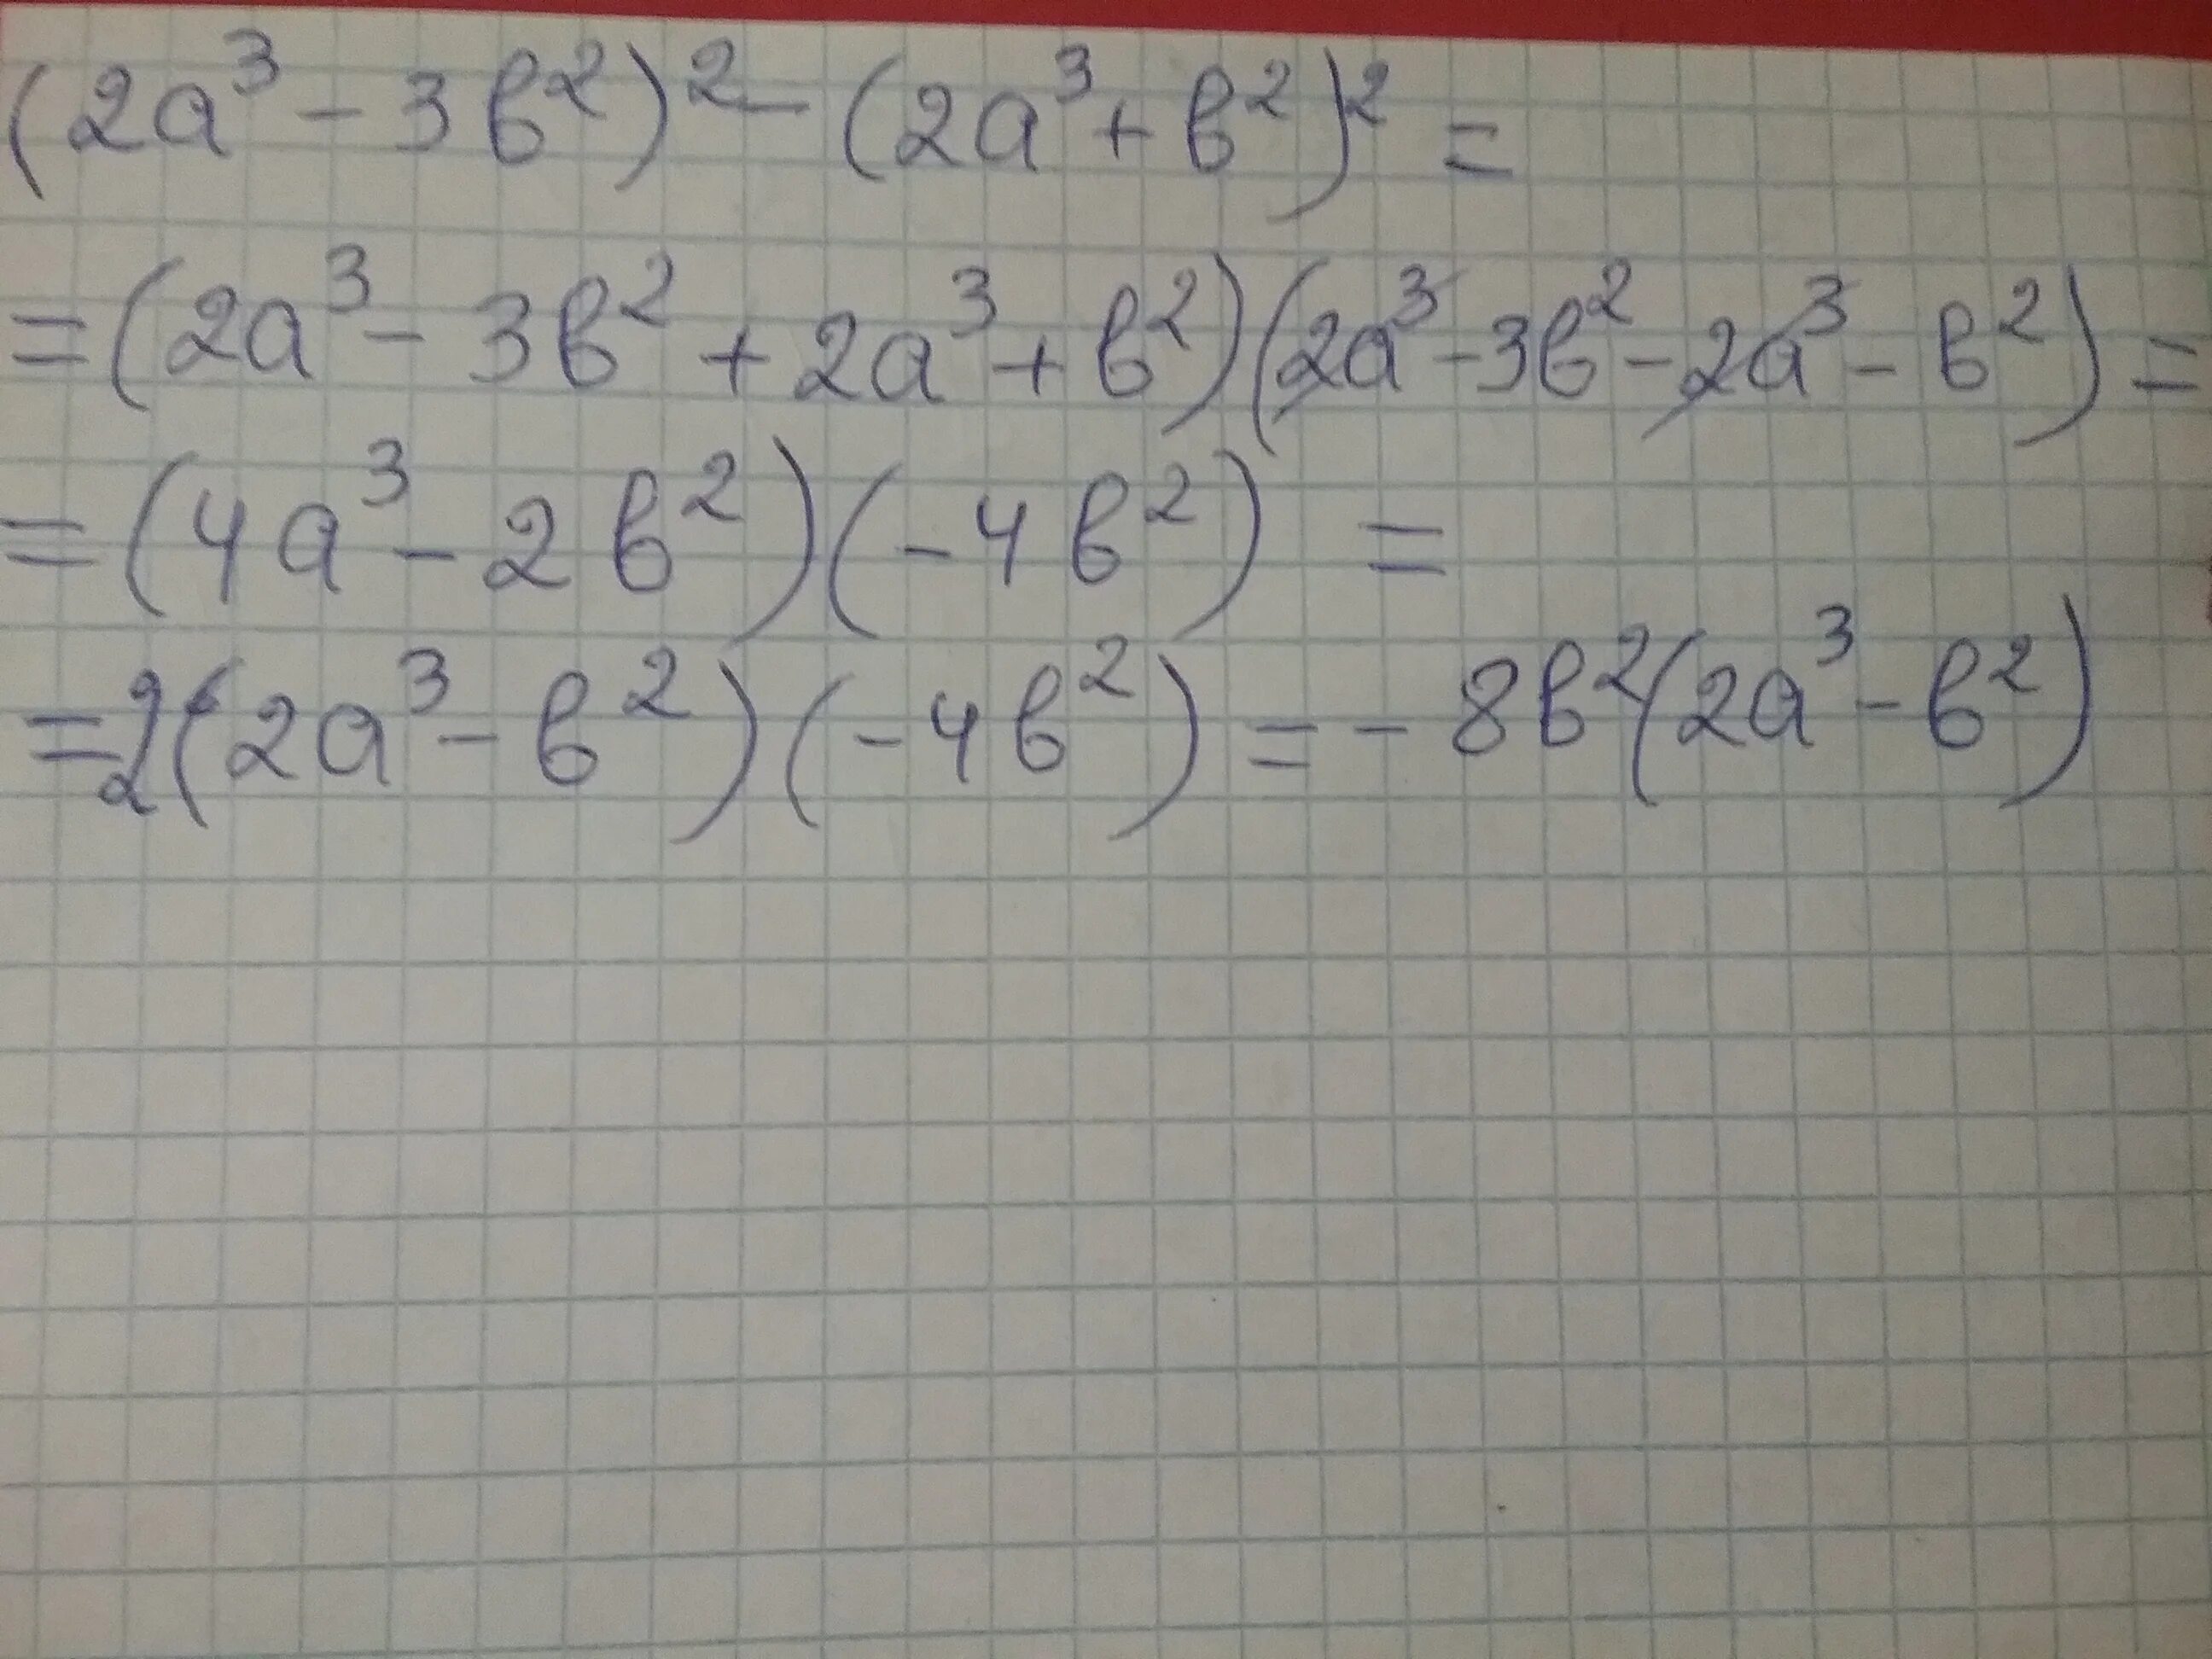 3a 2a b 3b. (A-B)(2a+3b). 3(A+2)+B(A+2). 2a-3/2a-b-2/b. (A+B)^3/B^2-A^2.